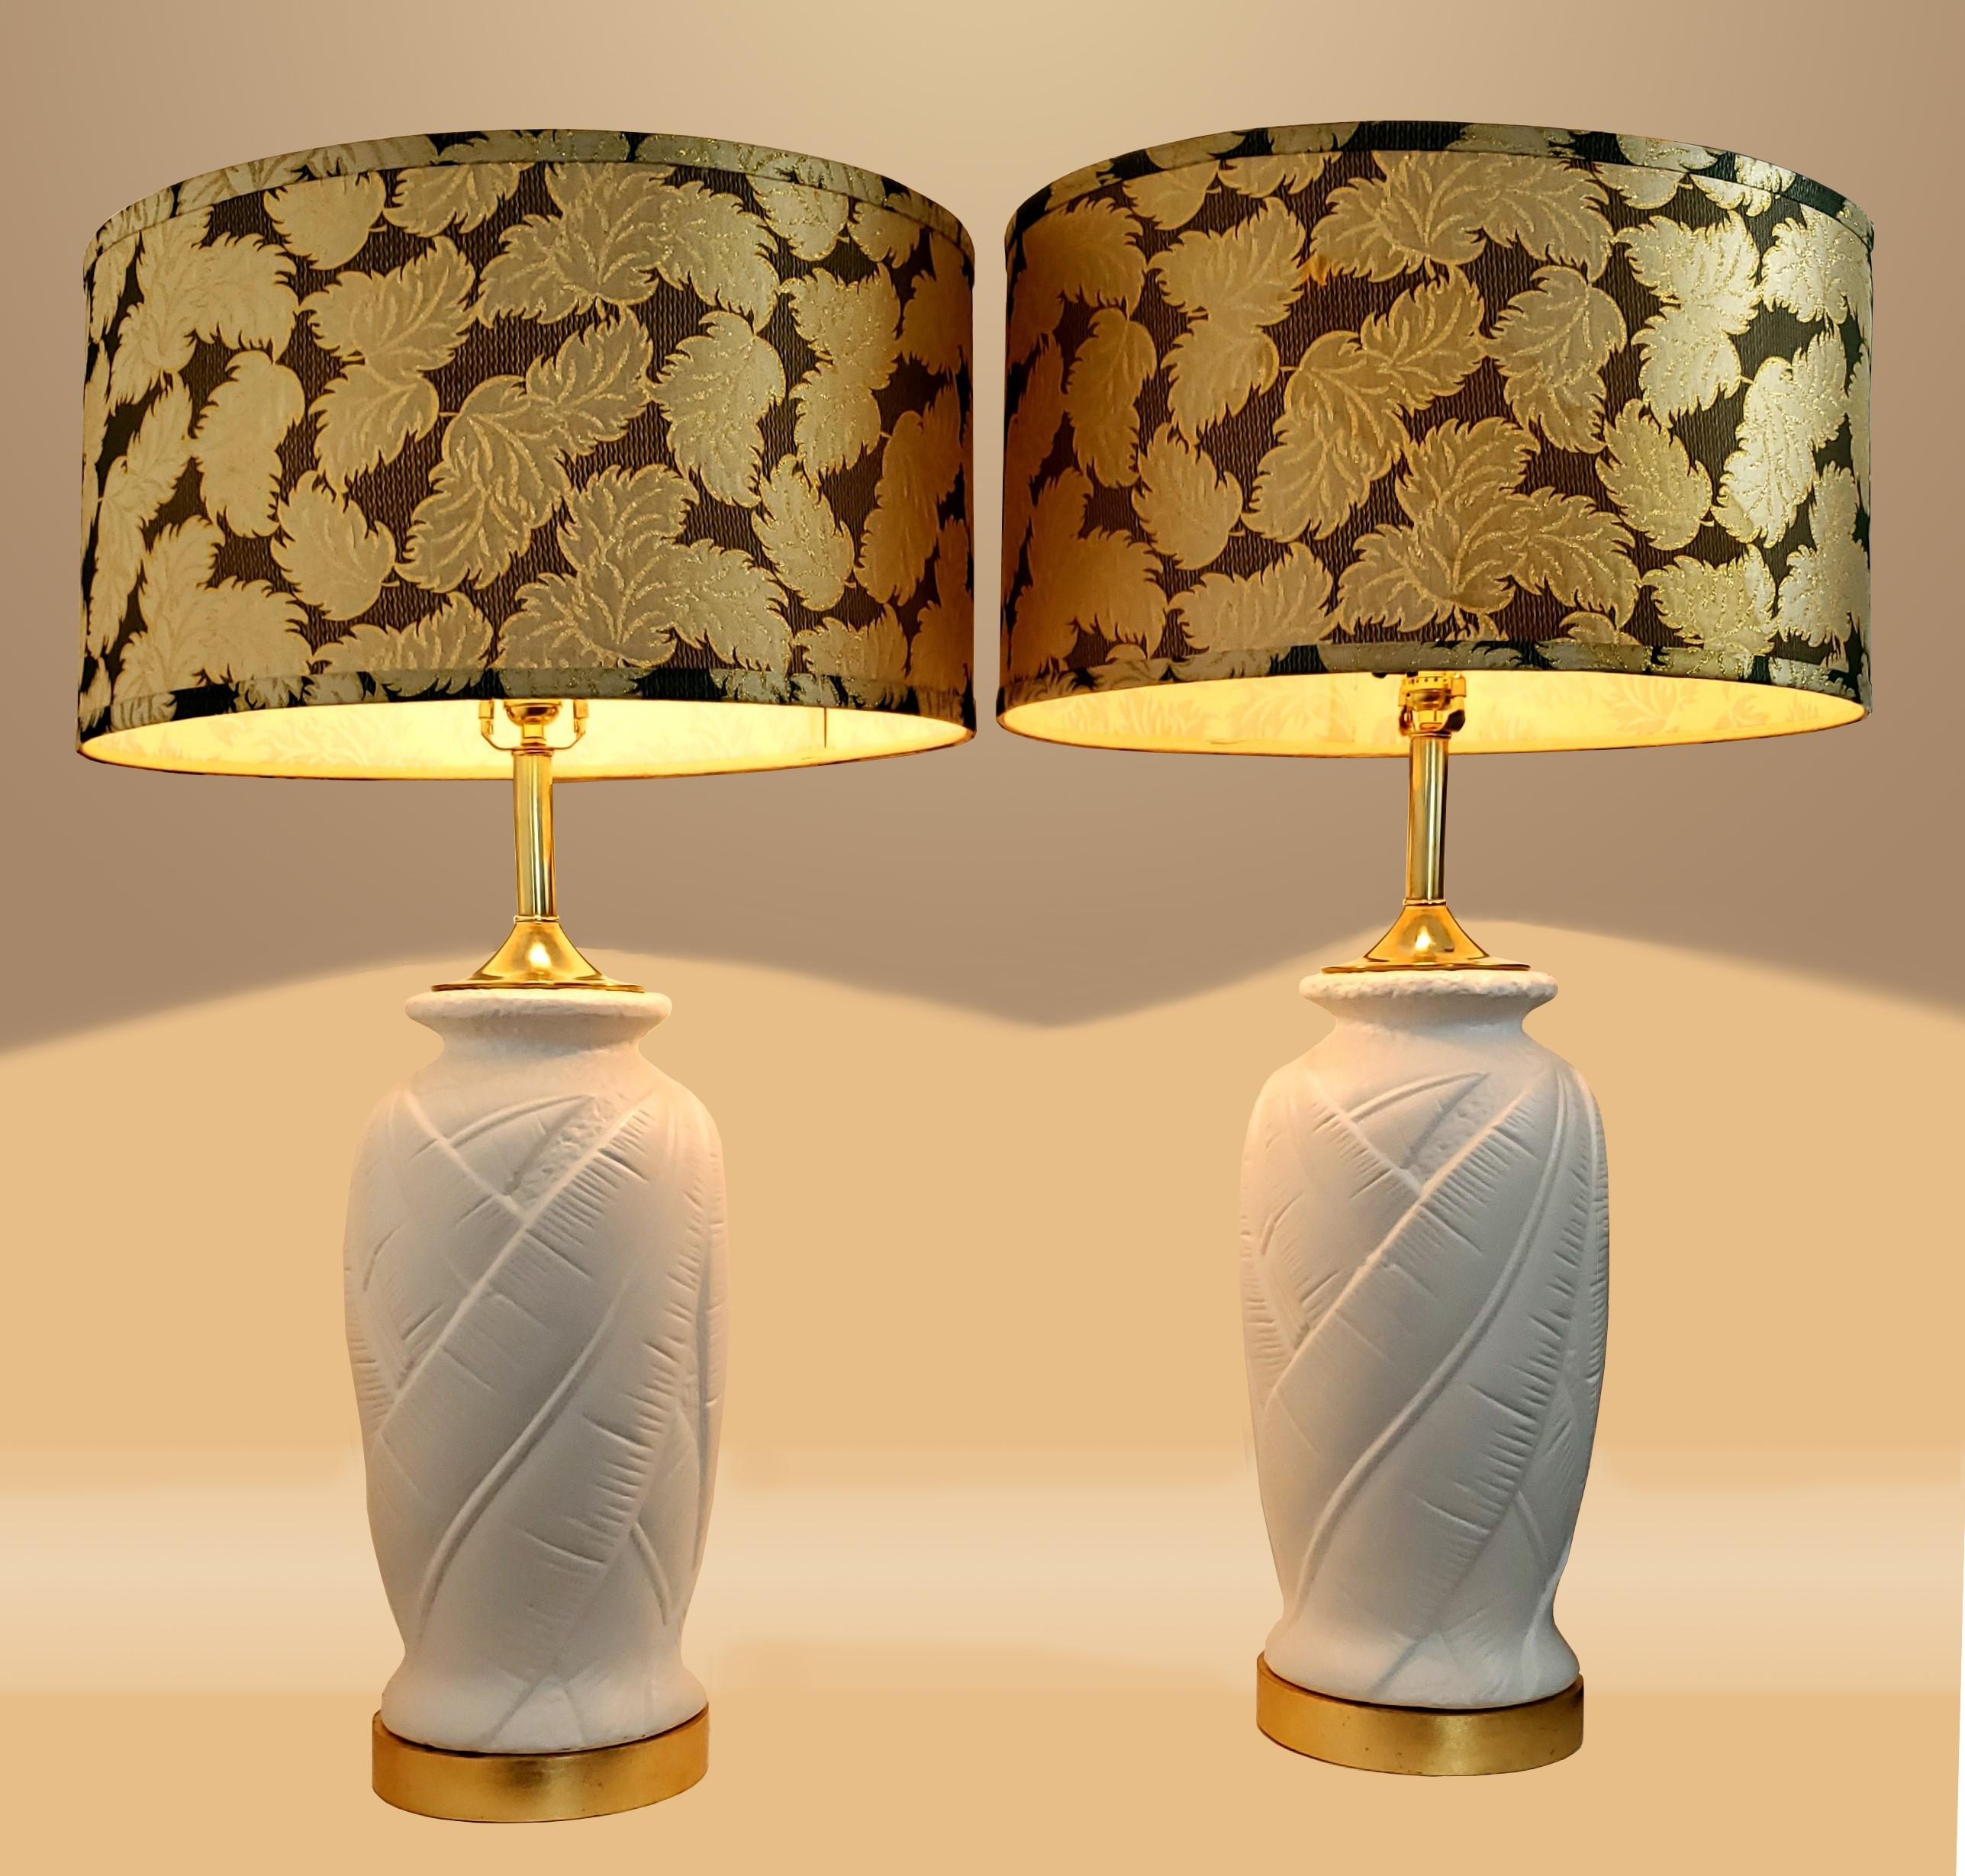 Paar restaurierte weiße Palmblattlampen aus Gips mit dekorativen Vintage-Lampenschirmen, um 1980. Diese Lampen wurden komplett demontiert, professionell grundiert und weiß lackiert, mit neuem Blattgold auf den Holzsockeln.
Vintage-Lampenschirme sind